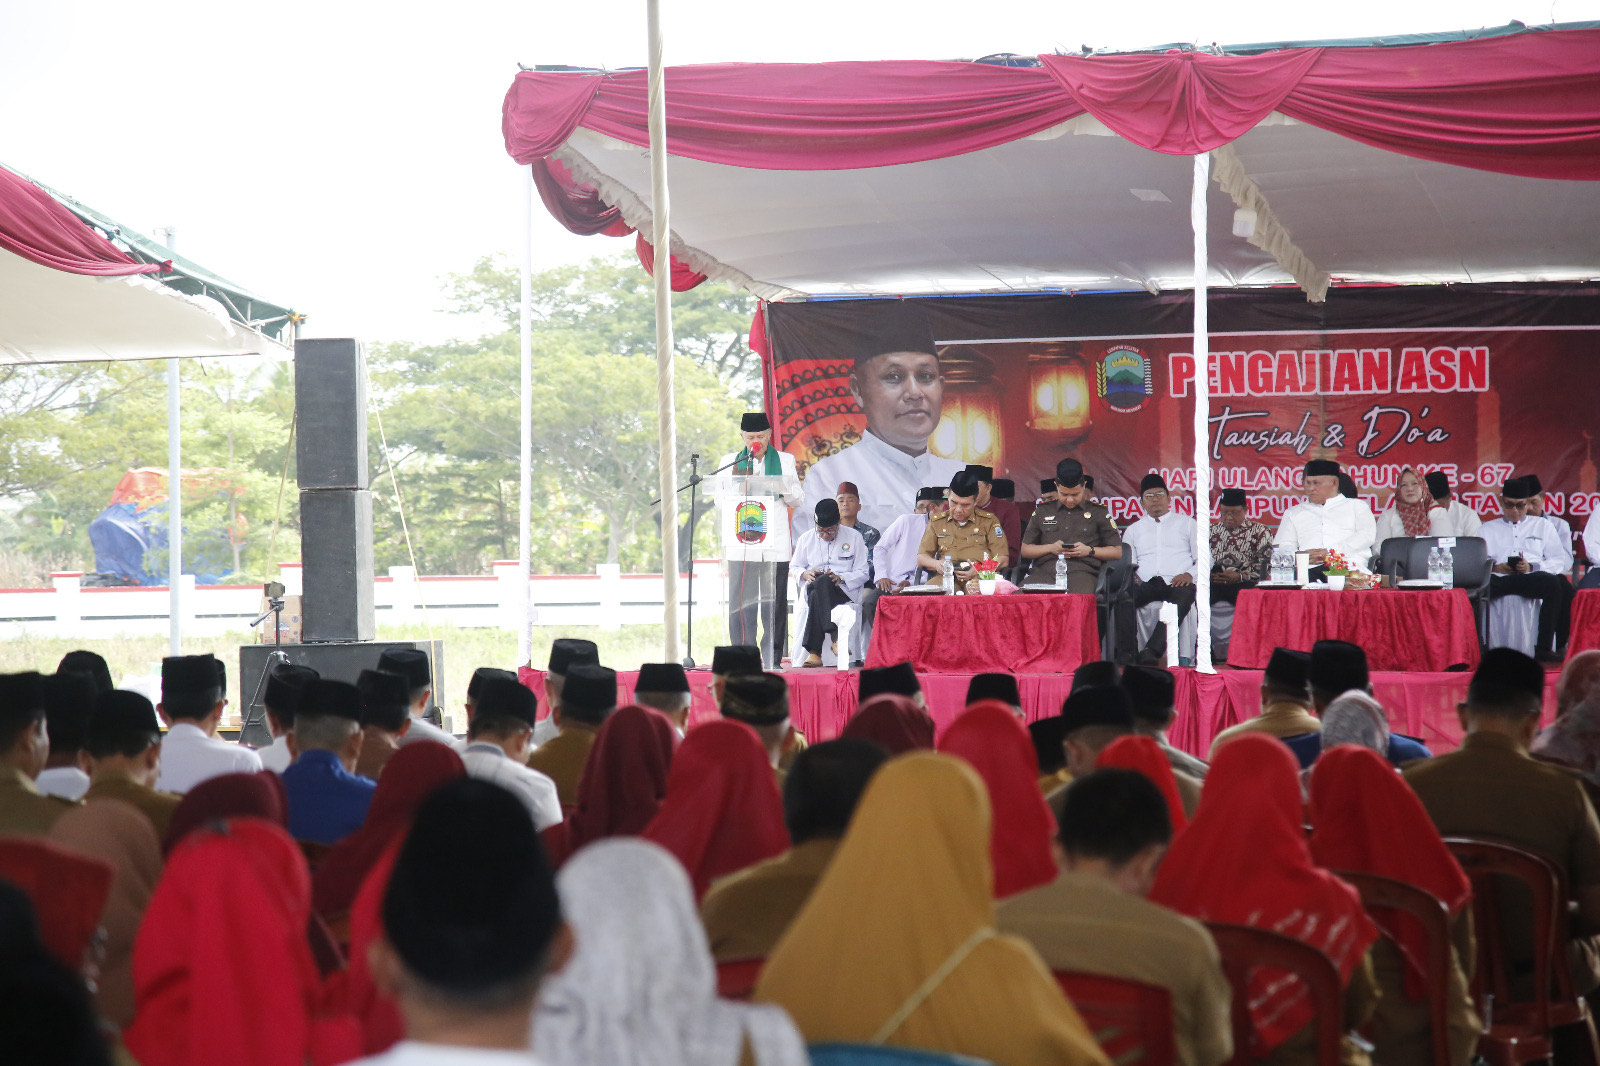 HUT ke-67 Lampung Selatan Diisi Pengajian ASN   